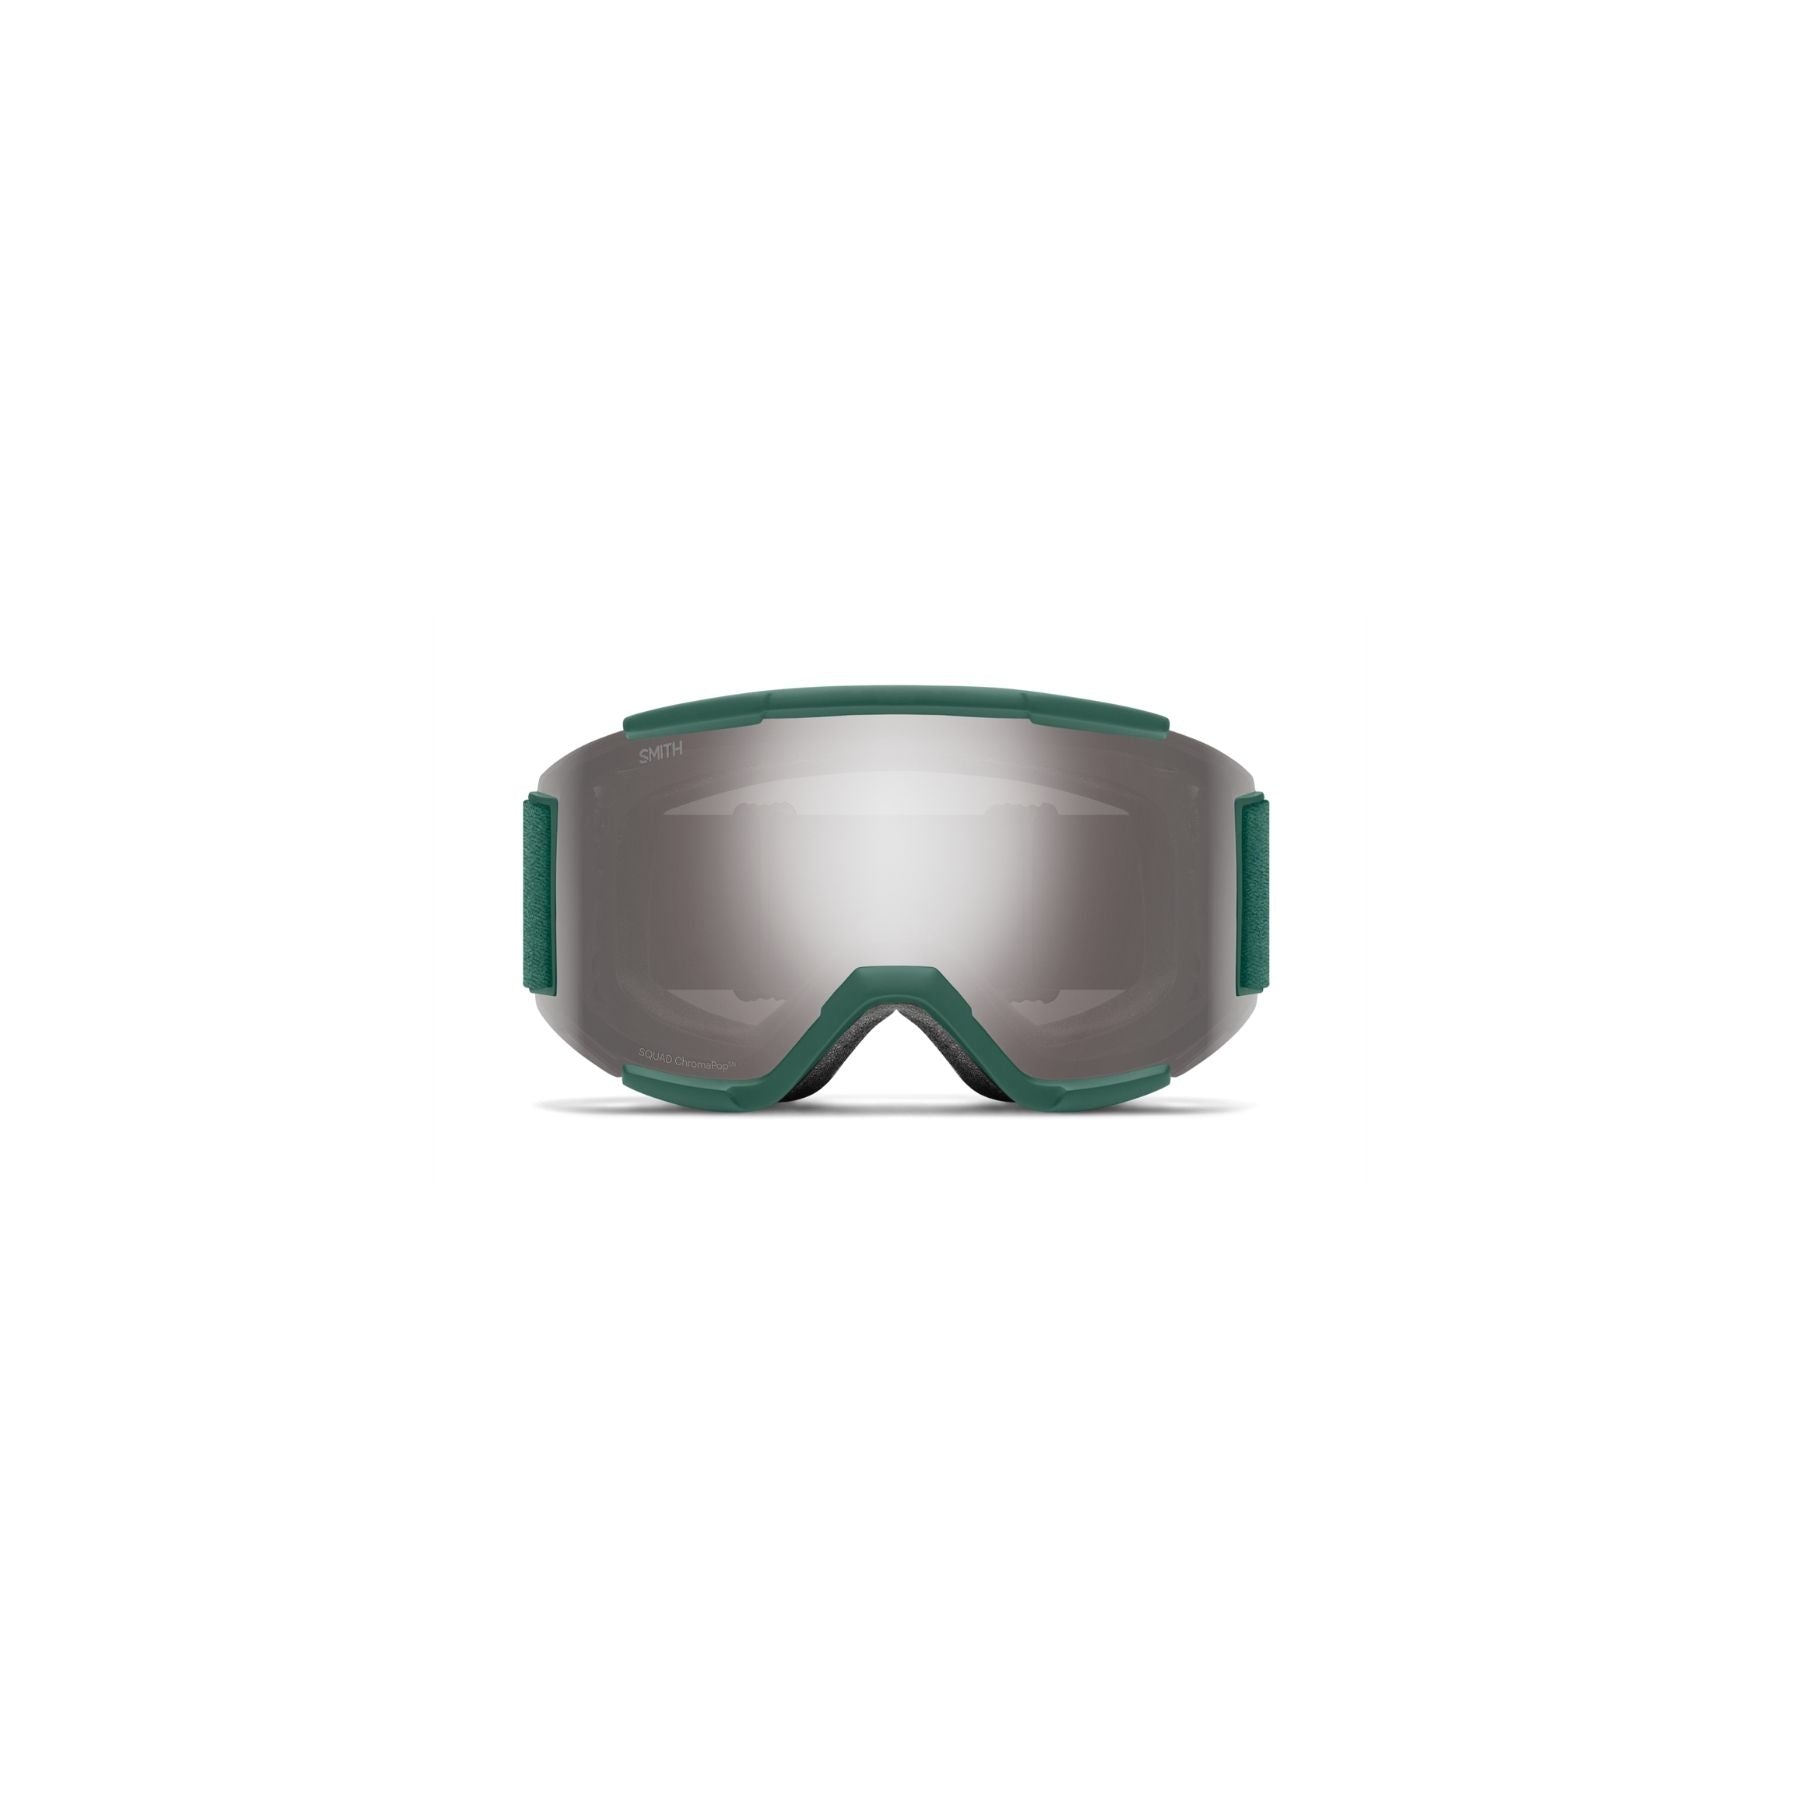 Smith Squad Goggles in Alpine Green Vista